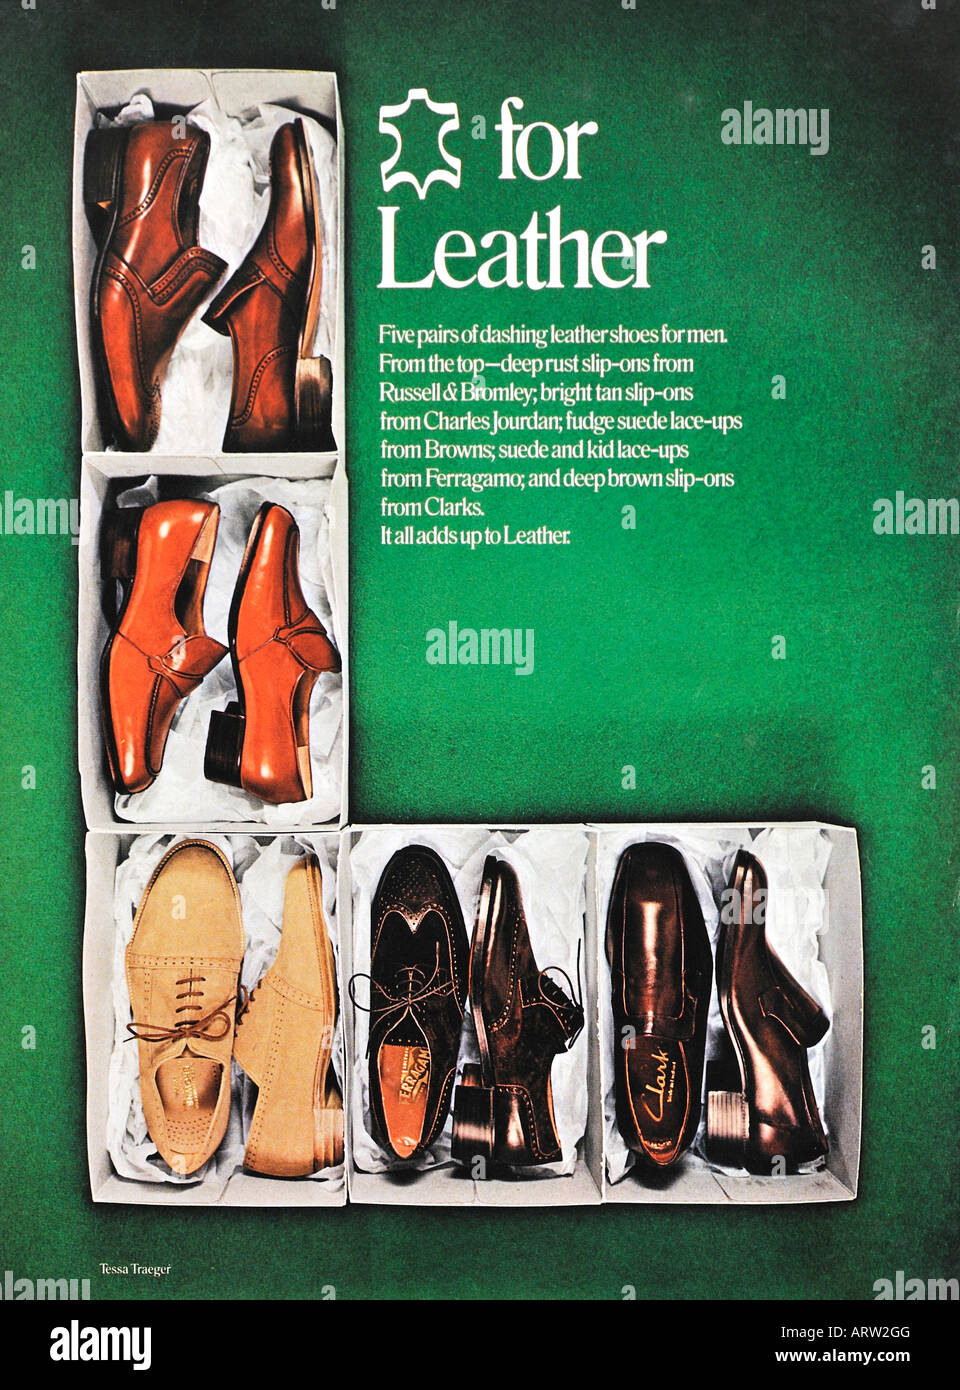 1970 publicité pour les chaussures en cuir pour un usage éditorial uniquement Banque D'Images